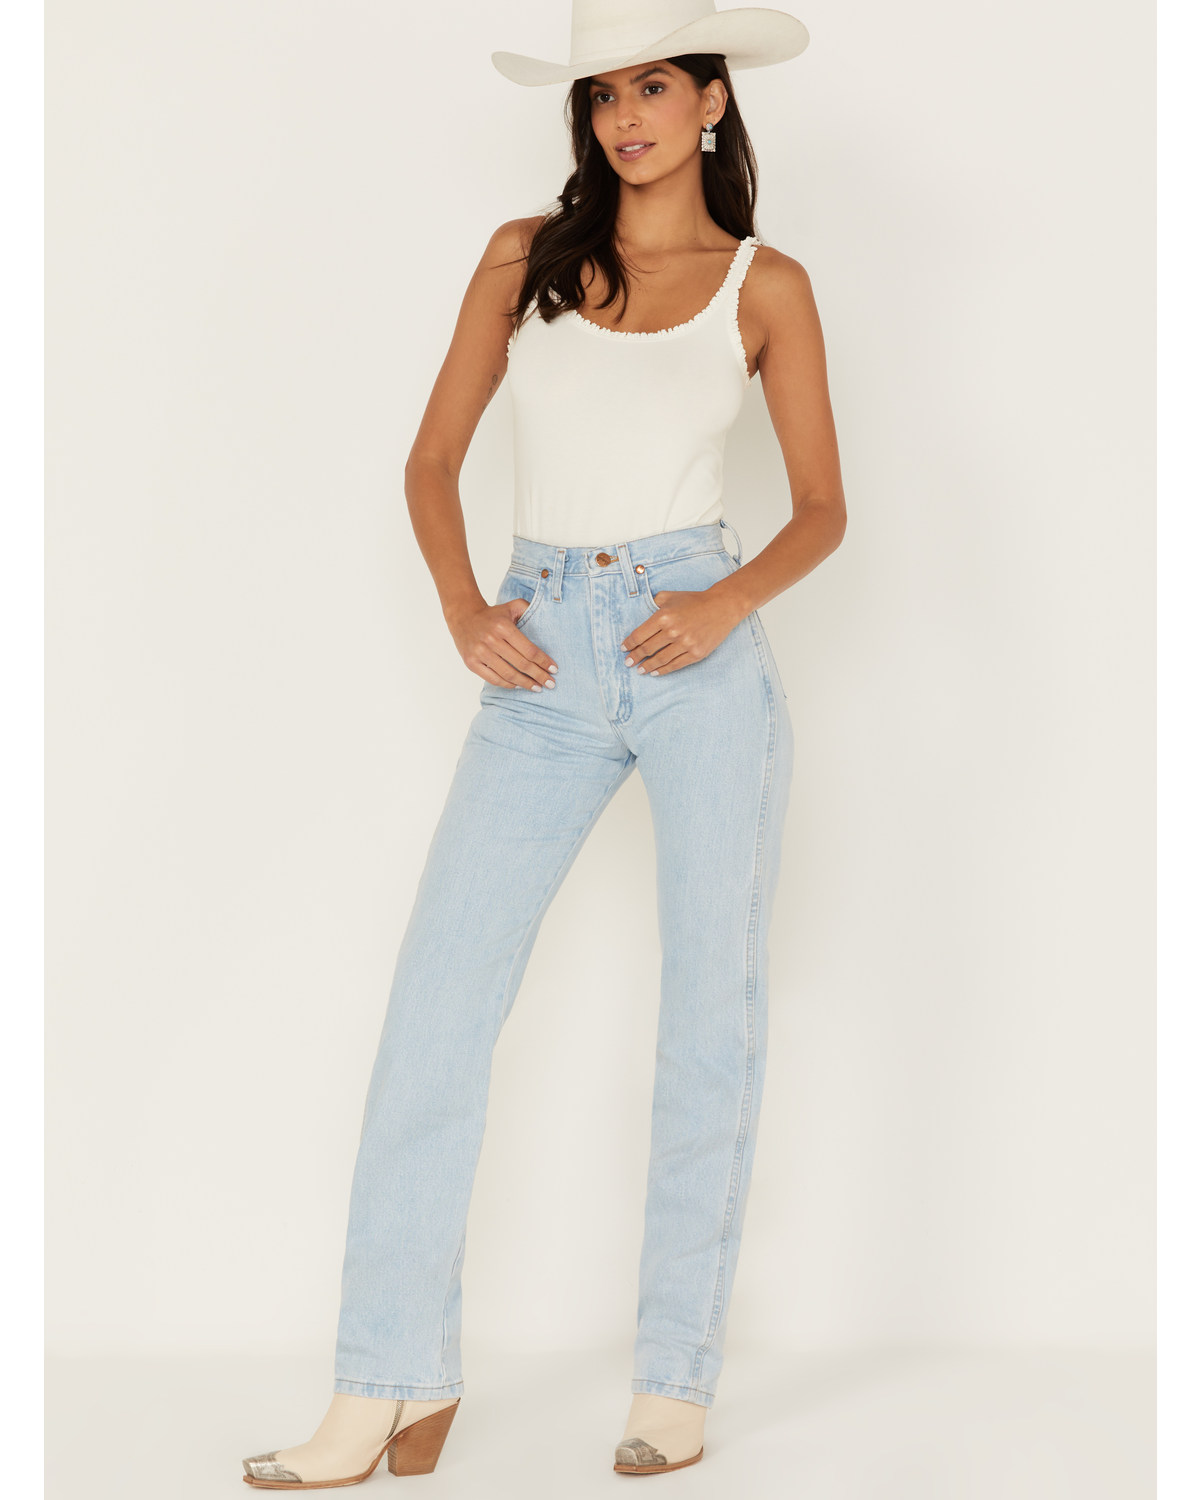 Wrangler Women's Light Wash Slim Fit Cowboy Cut Jeans